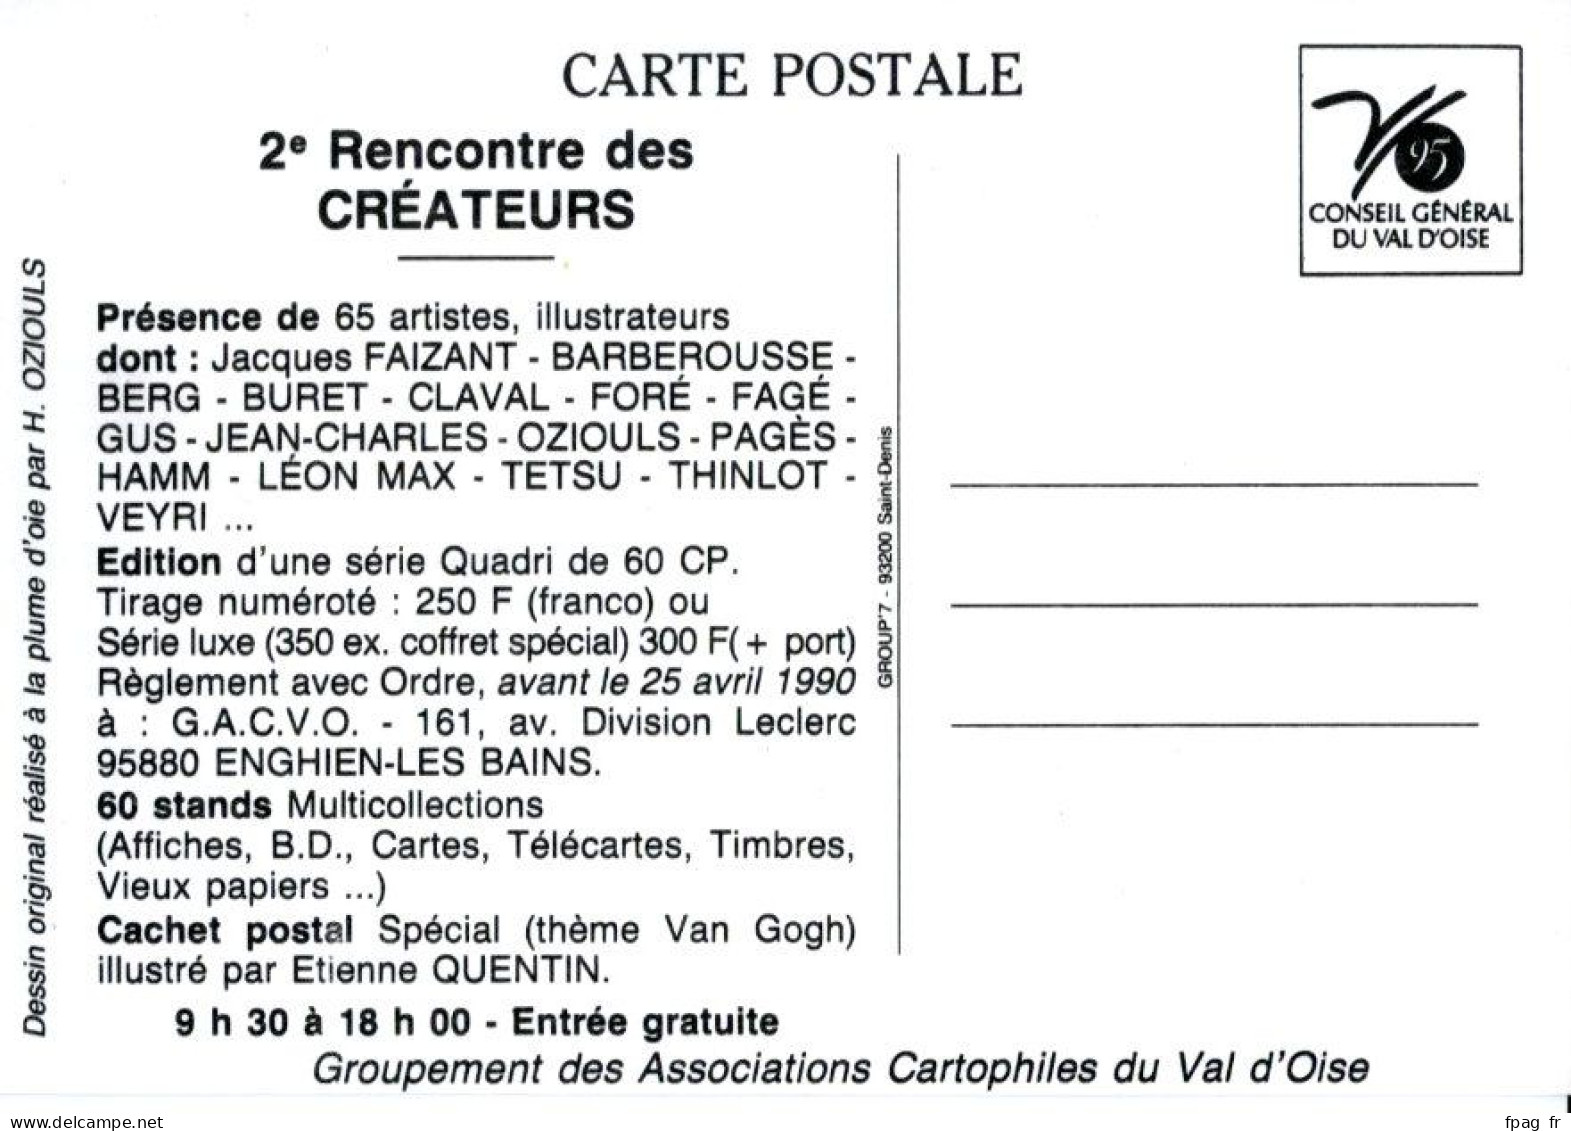 Henri Oziouls - 2e Rencontre Des Artistes Créateurs D'Affiches Et De Cartes Postales - 1990 - Enghien-les-Bains - Oziouls